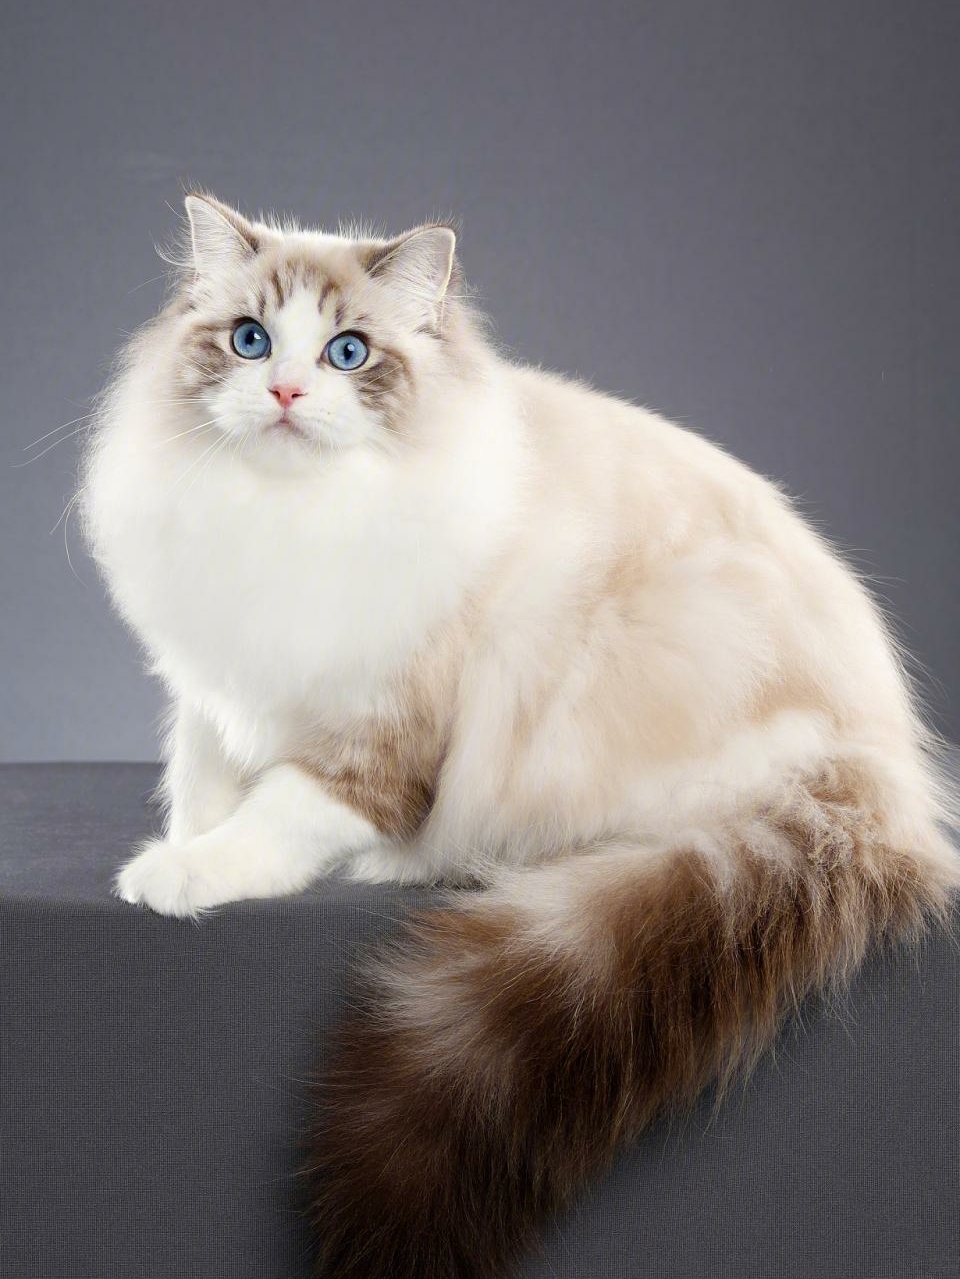 96重点是长毛猫先前被称作克梅尔猫,在美国也被叫